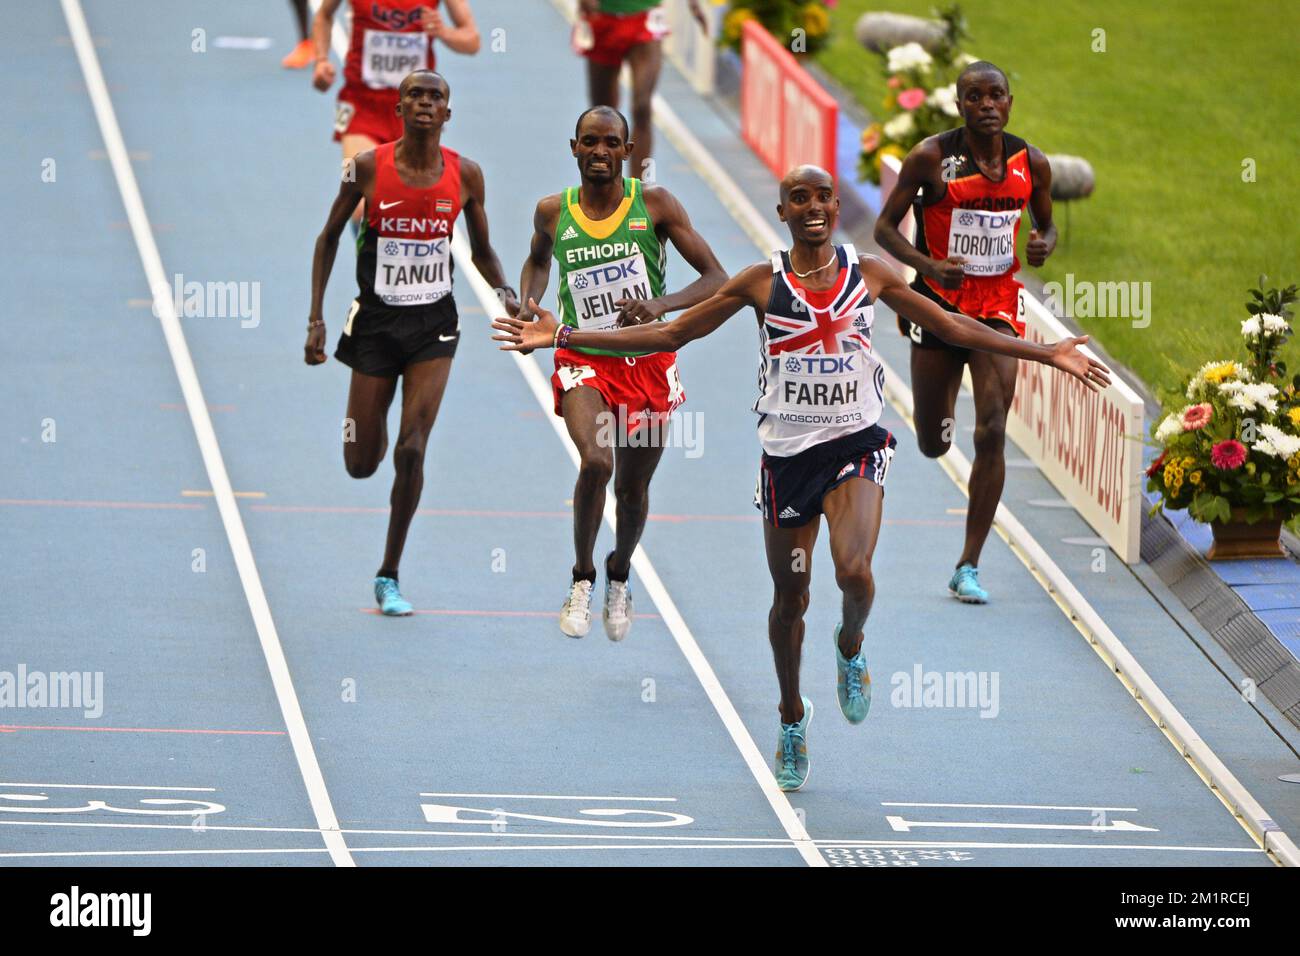 British Mohamed „Mo“ Farah (C) feiert den Sieg der Männer 10000m bei der Leichtathletik-Weltmeisterschaft im Luzhniki-Stadion in Moskau, Russland, Samstag, den 10. August 2013. Die Weltmeisterschaften finden vom 10. Bis 18. August statt. Stockfoto